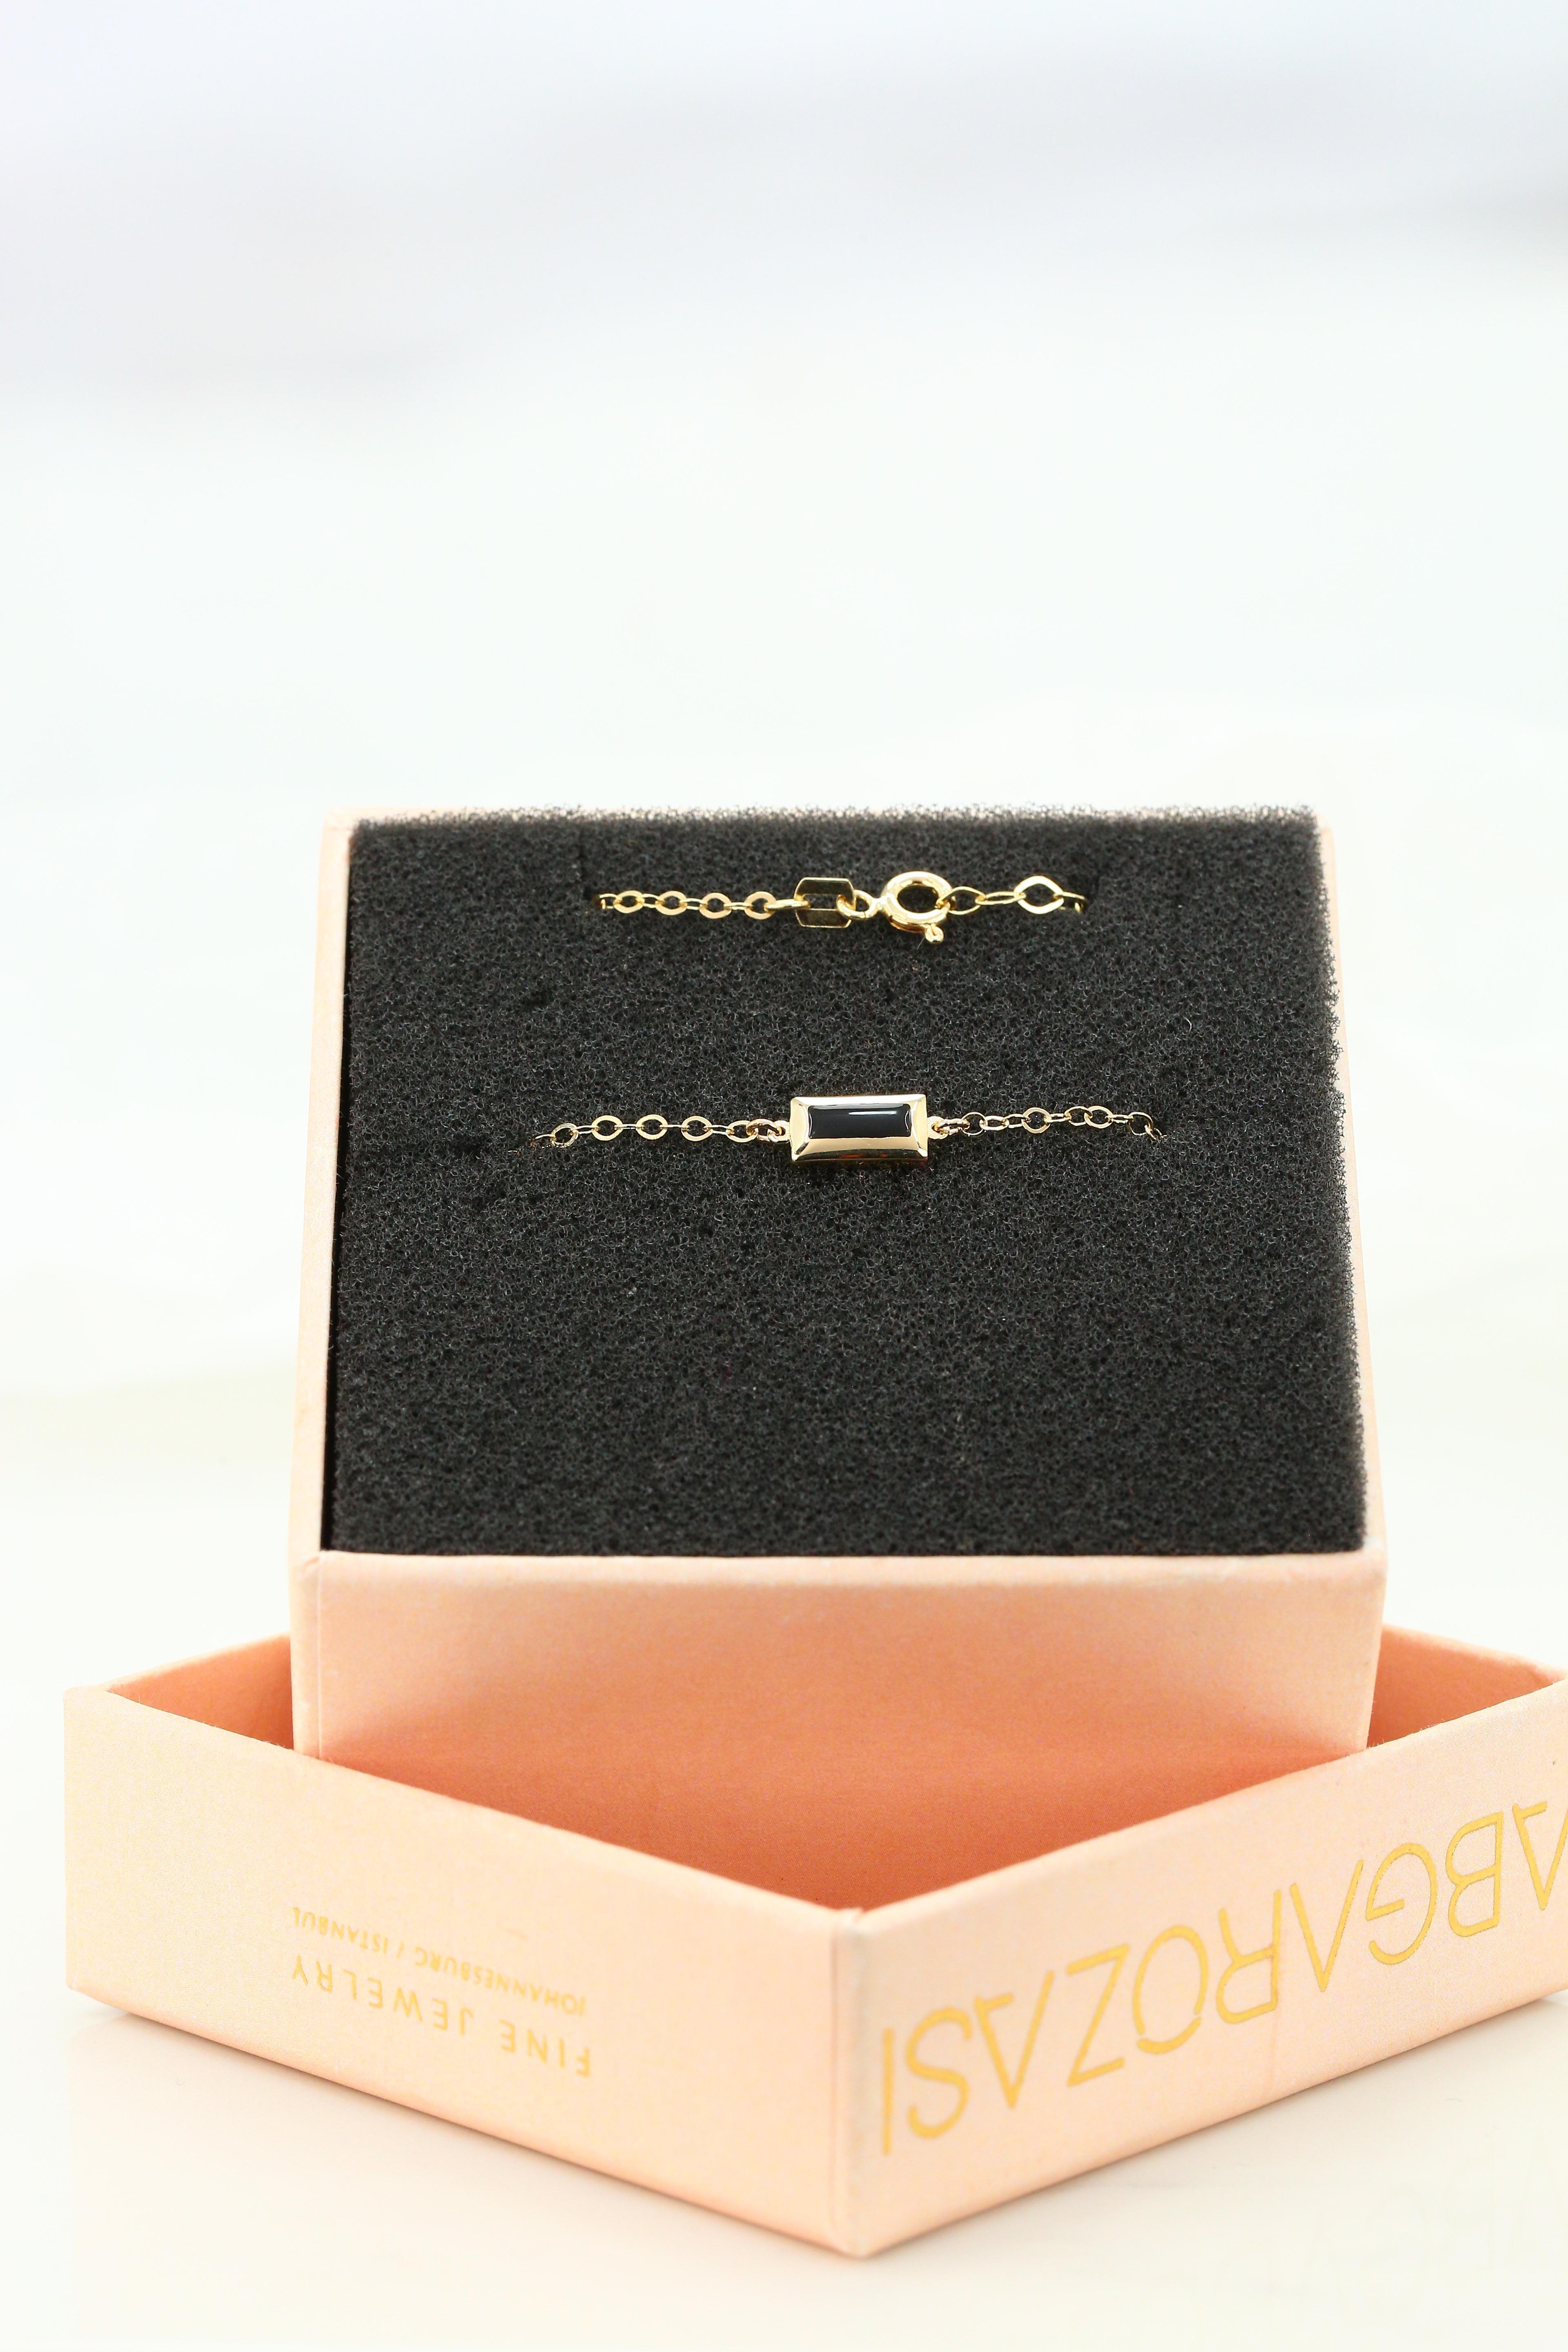 14k gold dainty bracelet